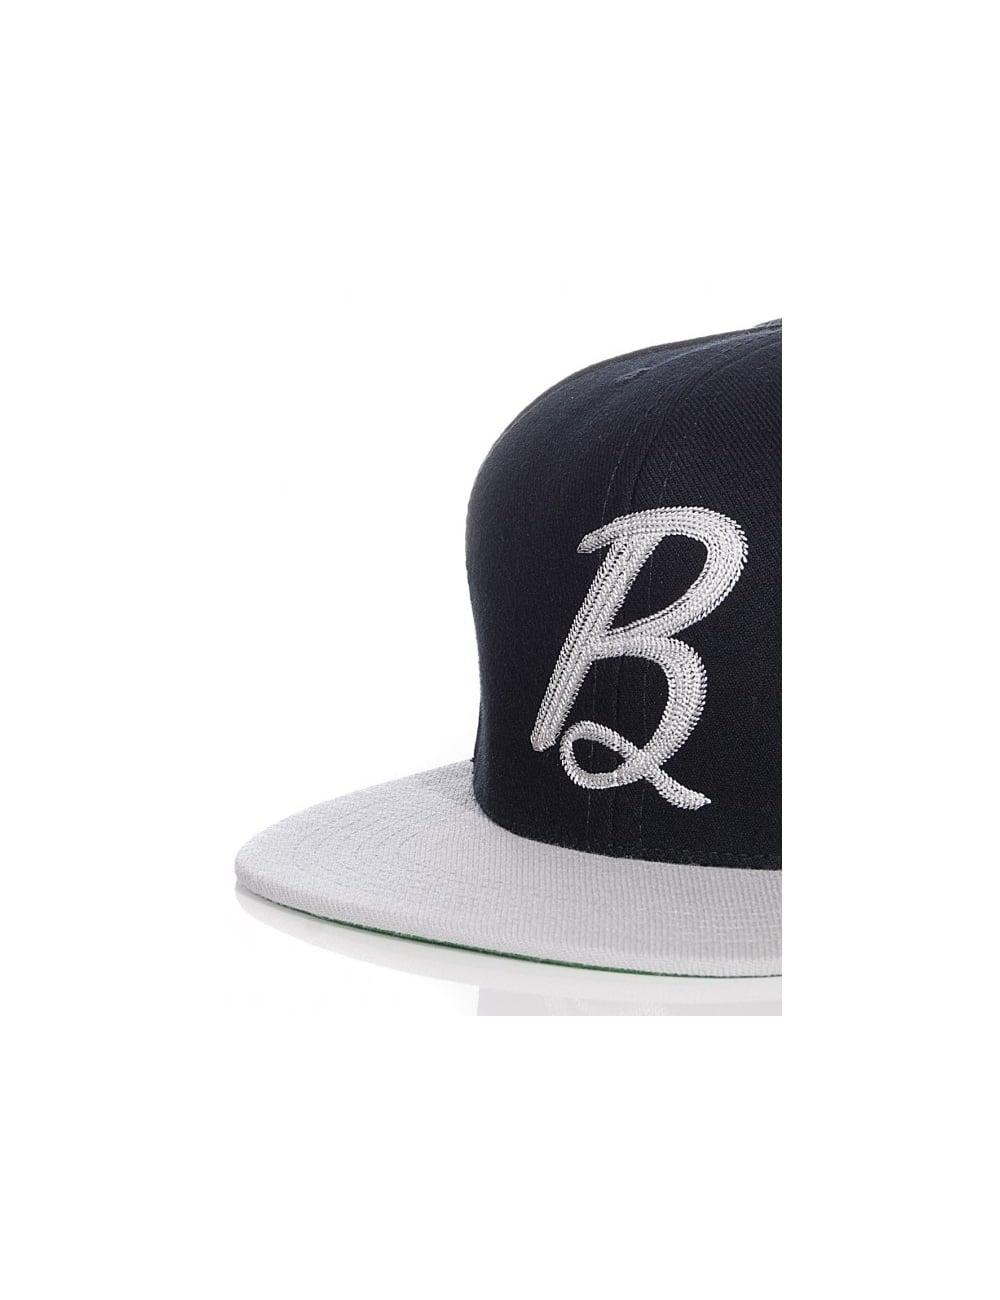 Black Script B Logo - Benny Gold Script B Snapback Cap - Black